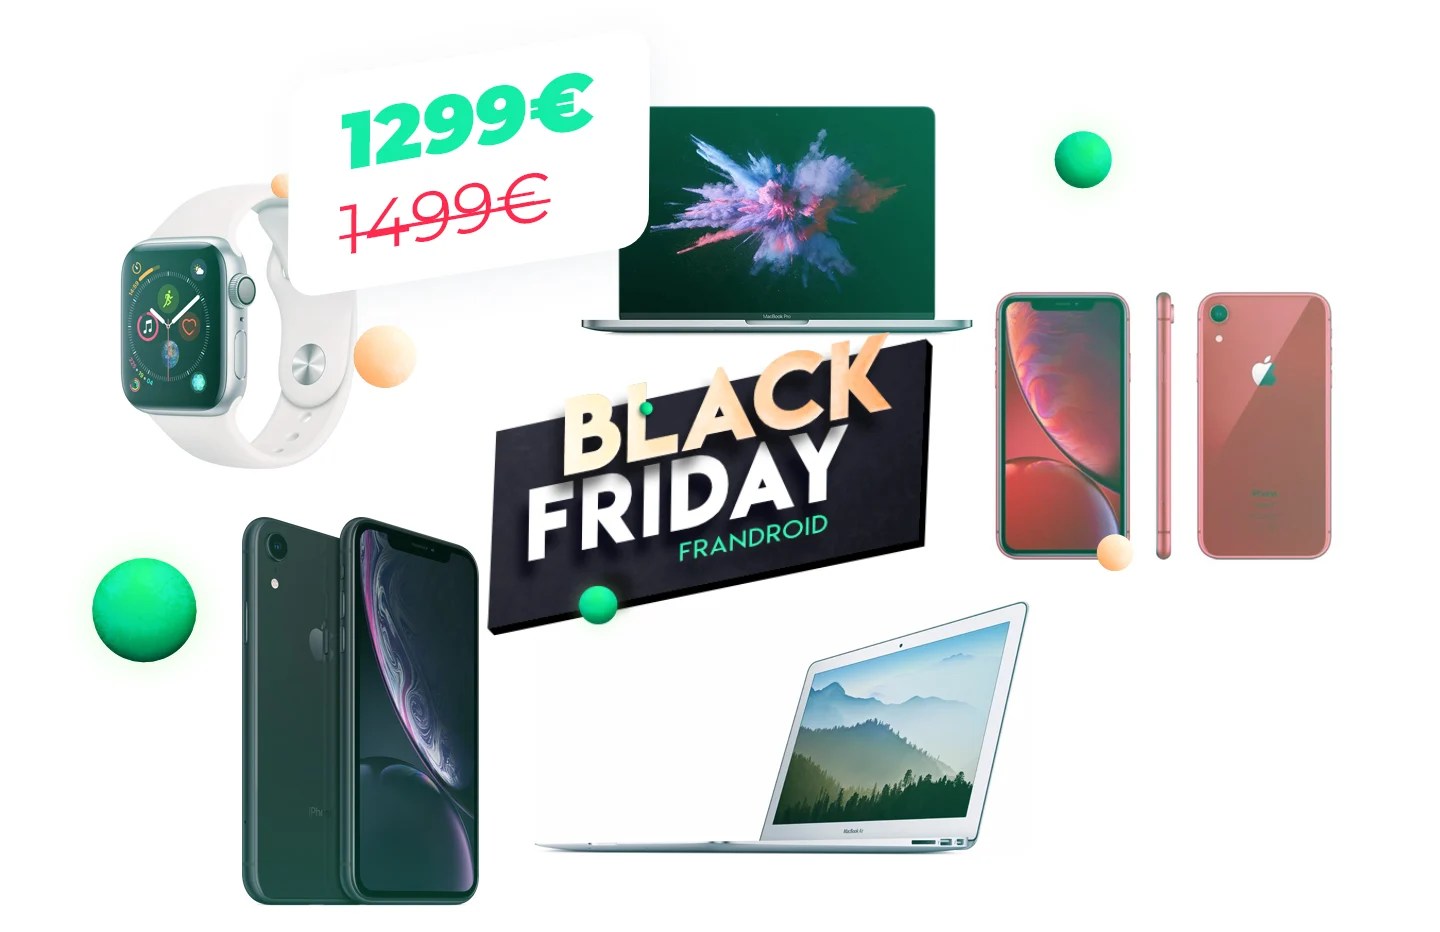 iPhone, MacBook Pro, AirPods : notre sélection Apple du Black Friday 2019